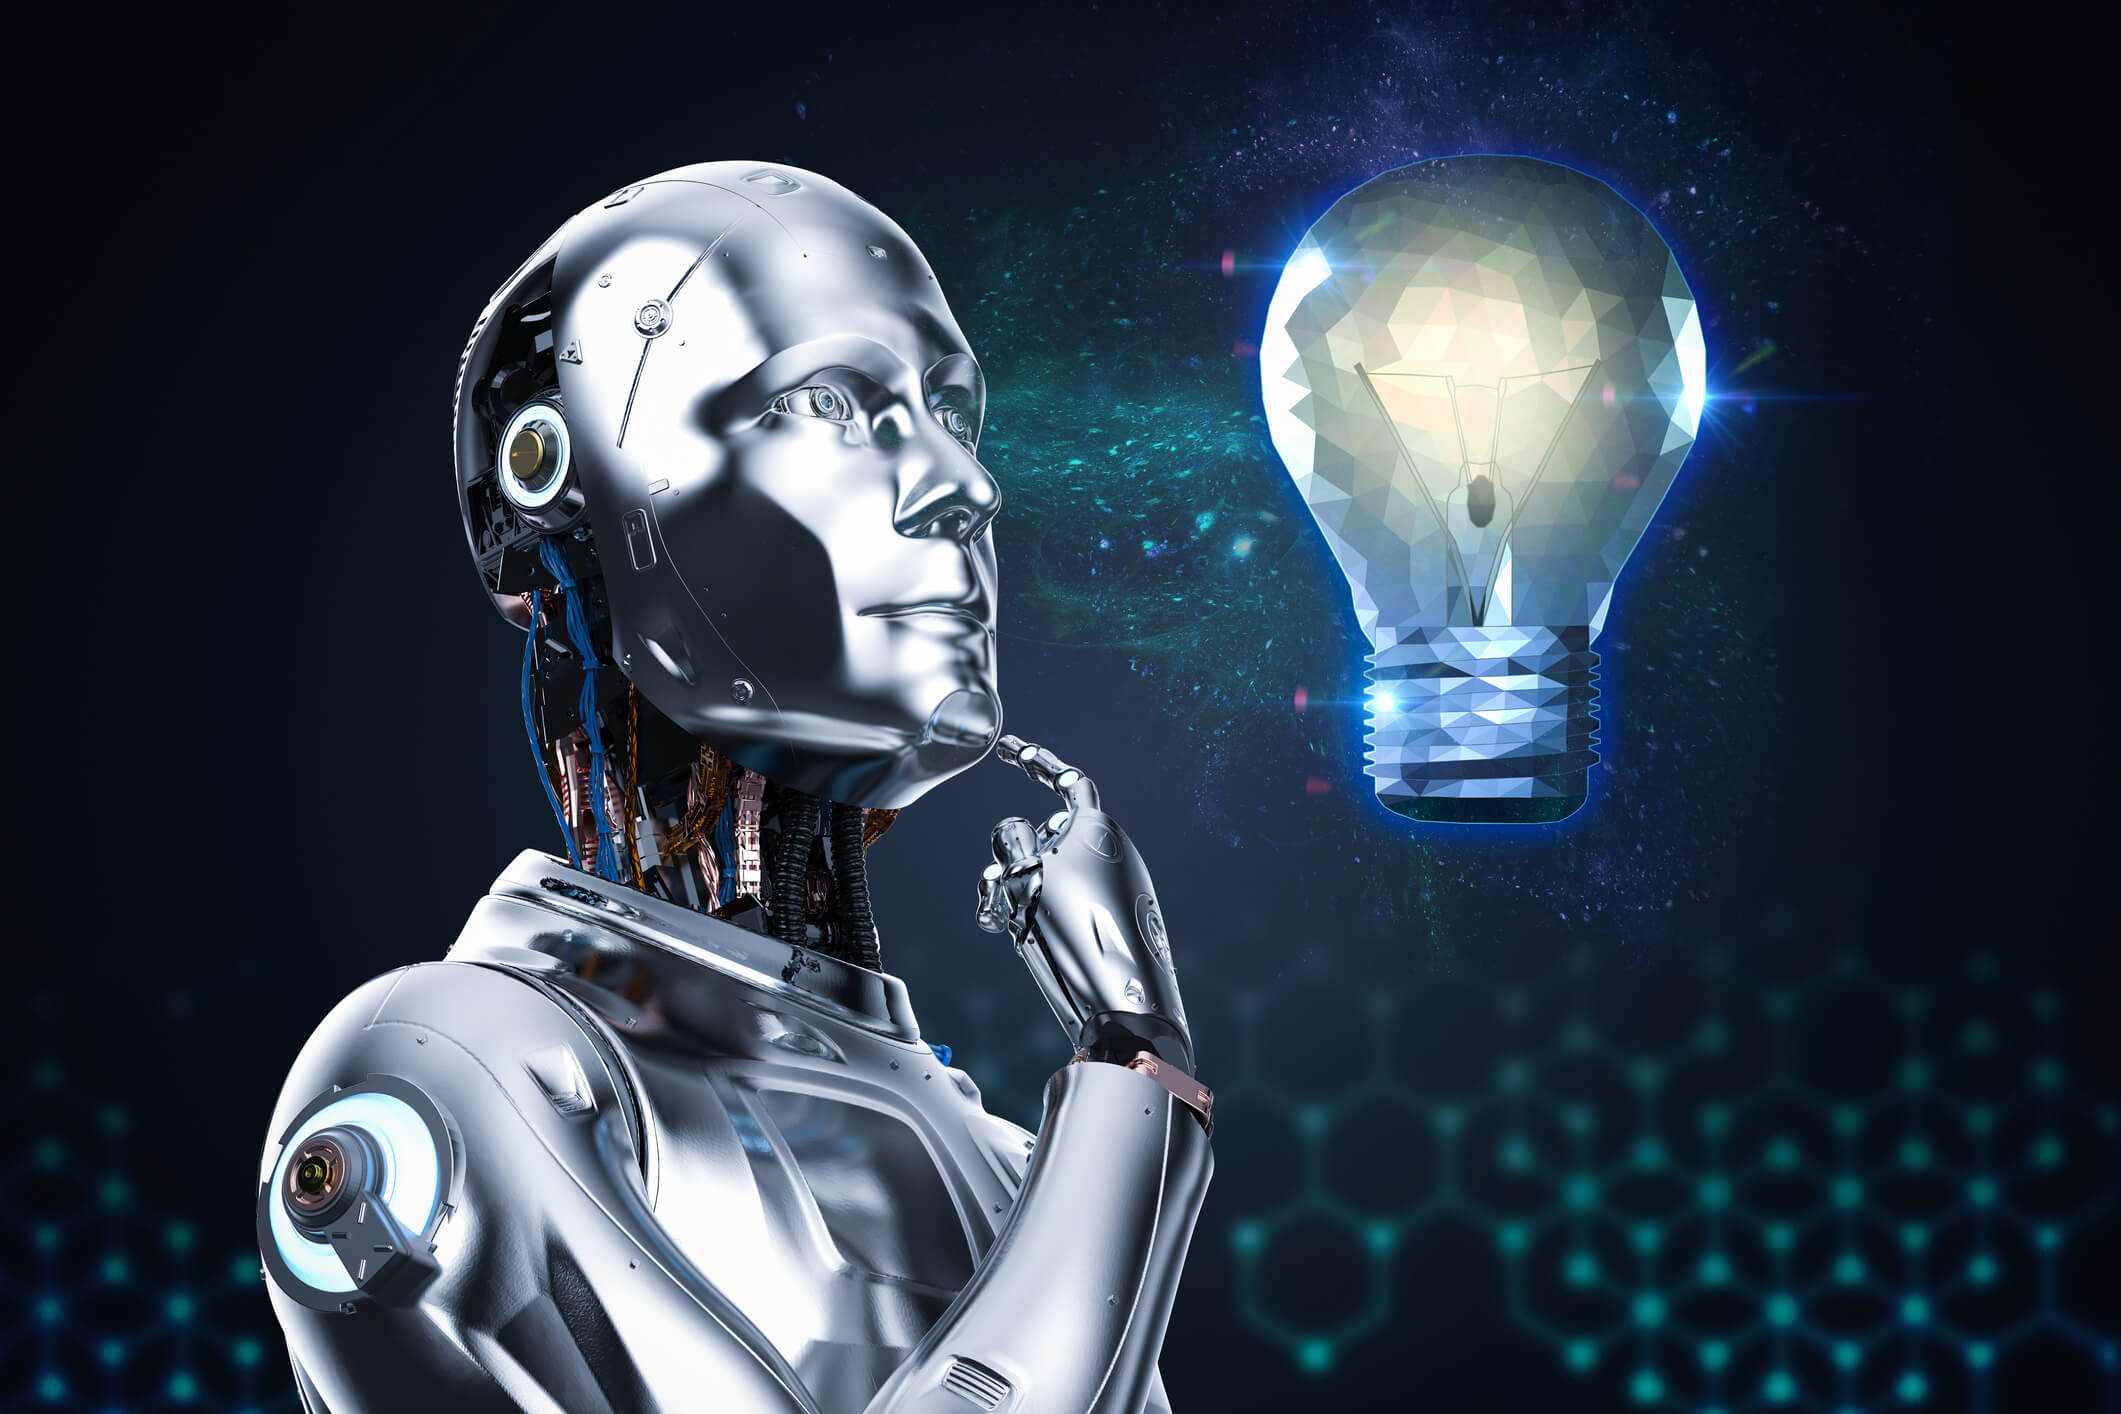 Robô de aplicativo de inteligência artificial olhando para uma lâmpada, a imagem sugere que ele está tendo uma nova ideia sobre como funciona a inteligência artificial.